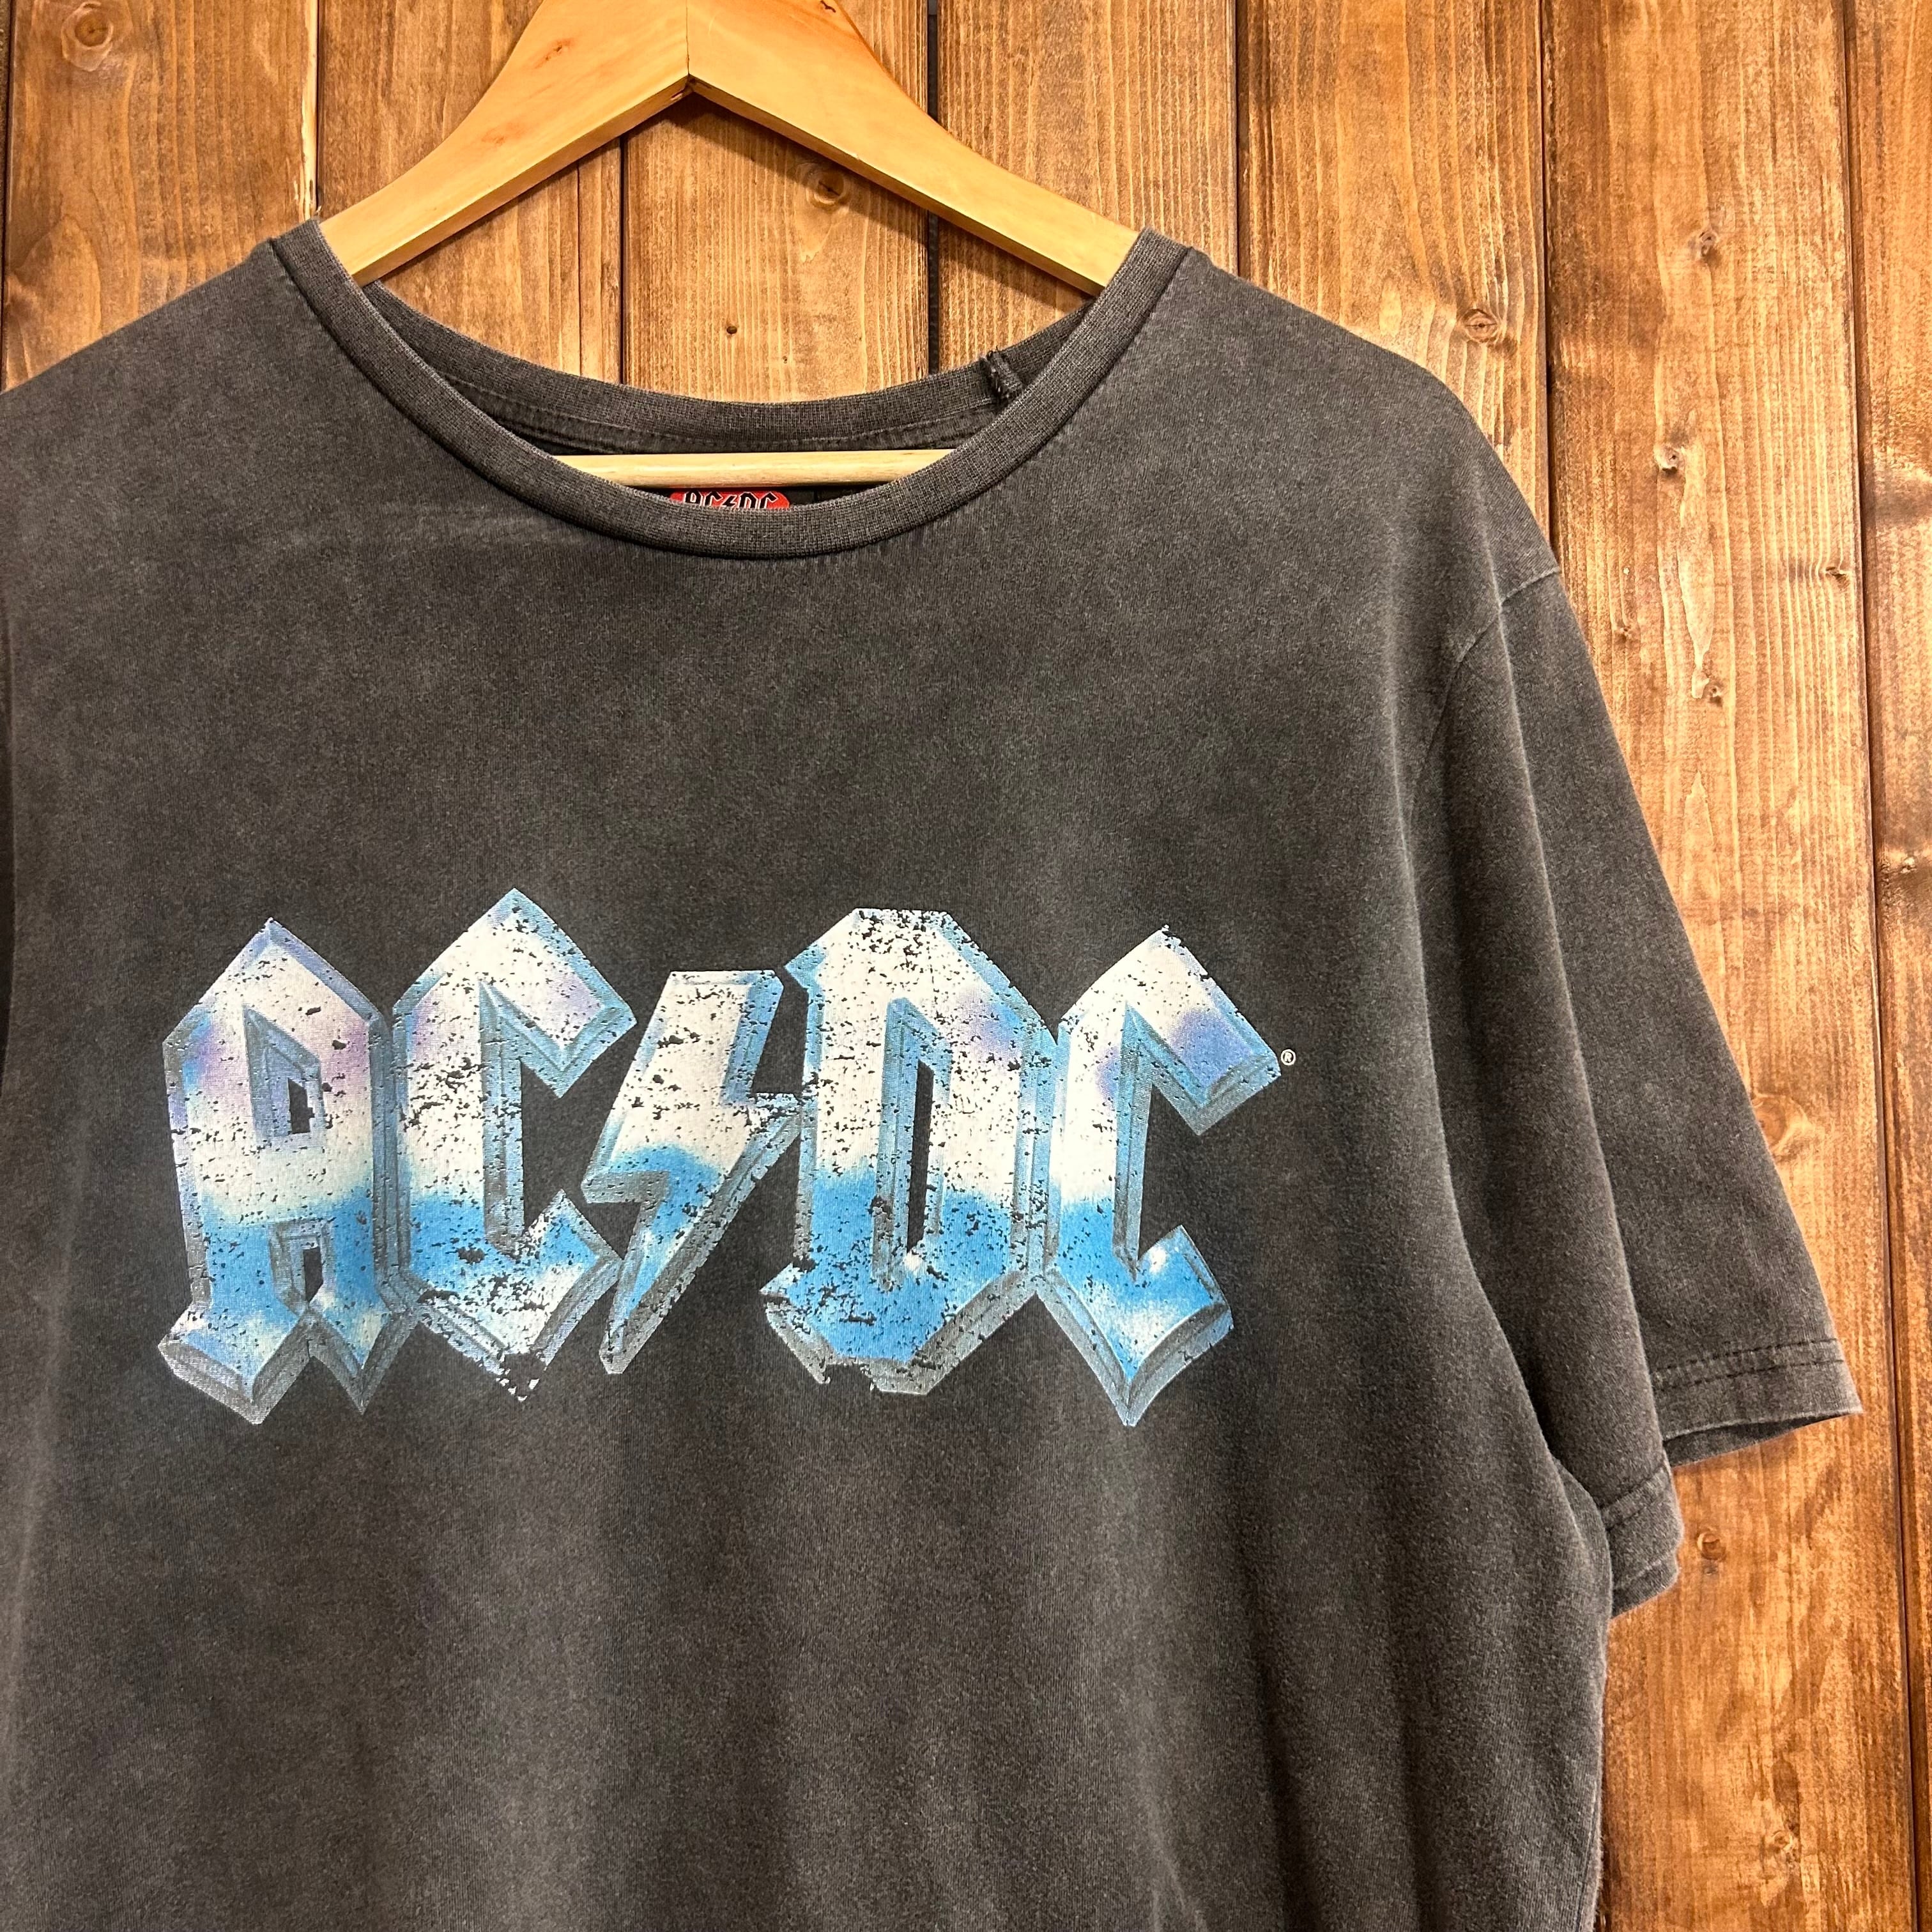 希少 AC/DC  USA製 ロック バンド Tシャツ L